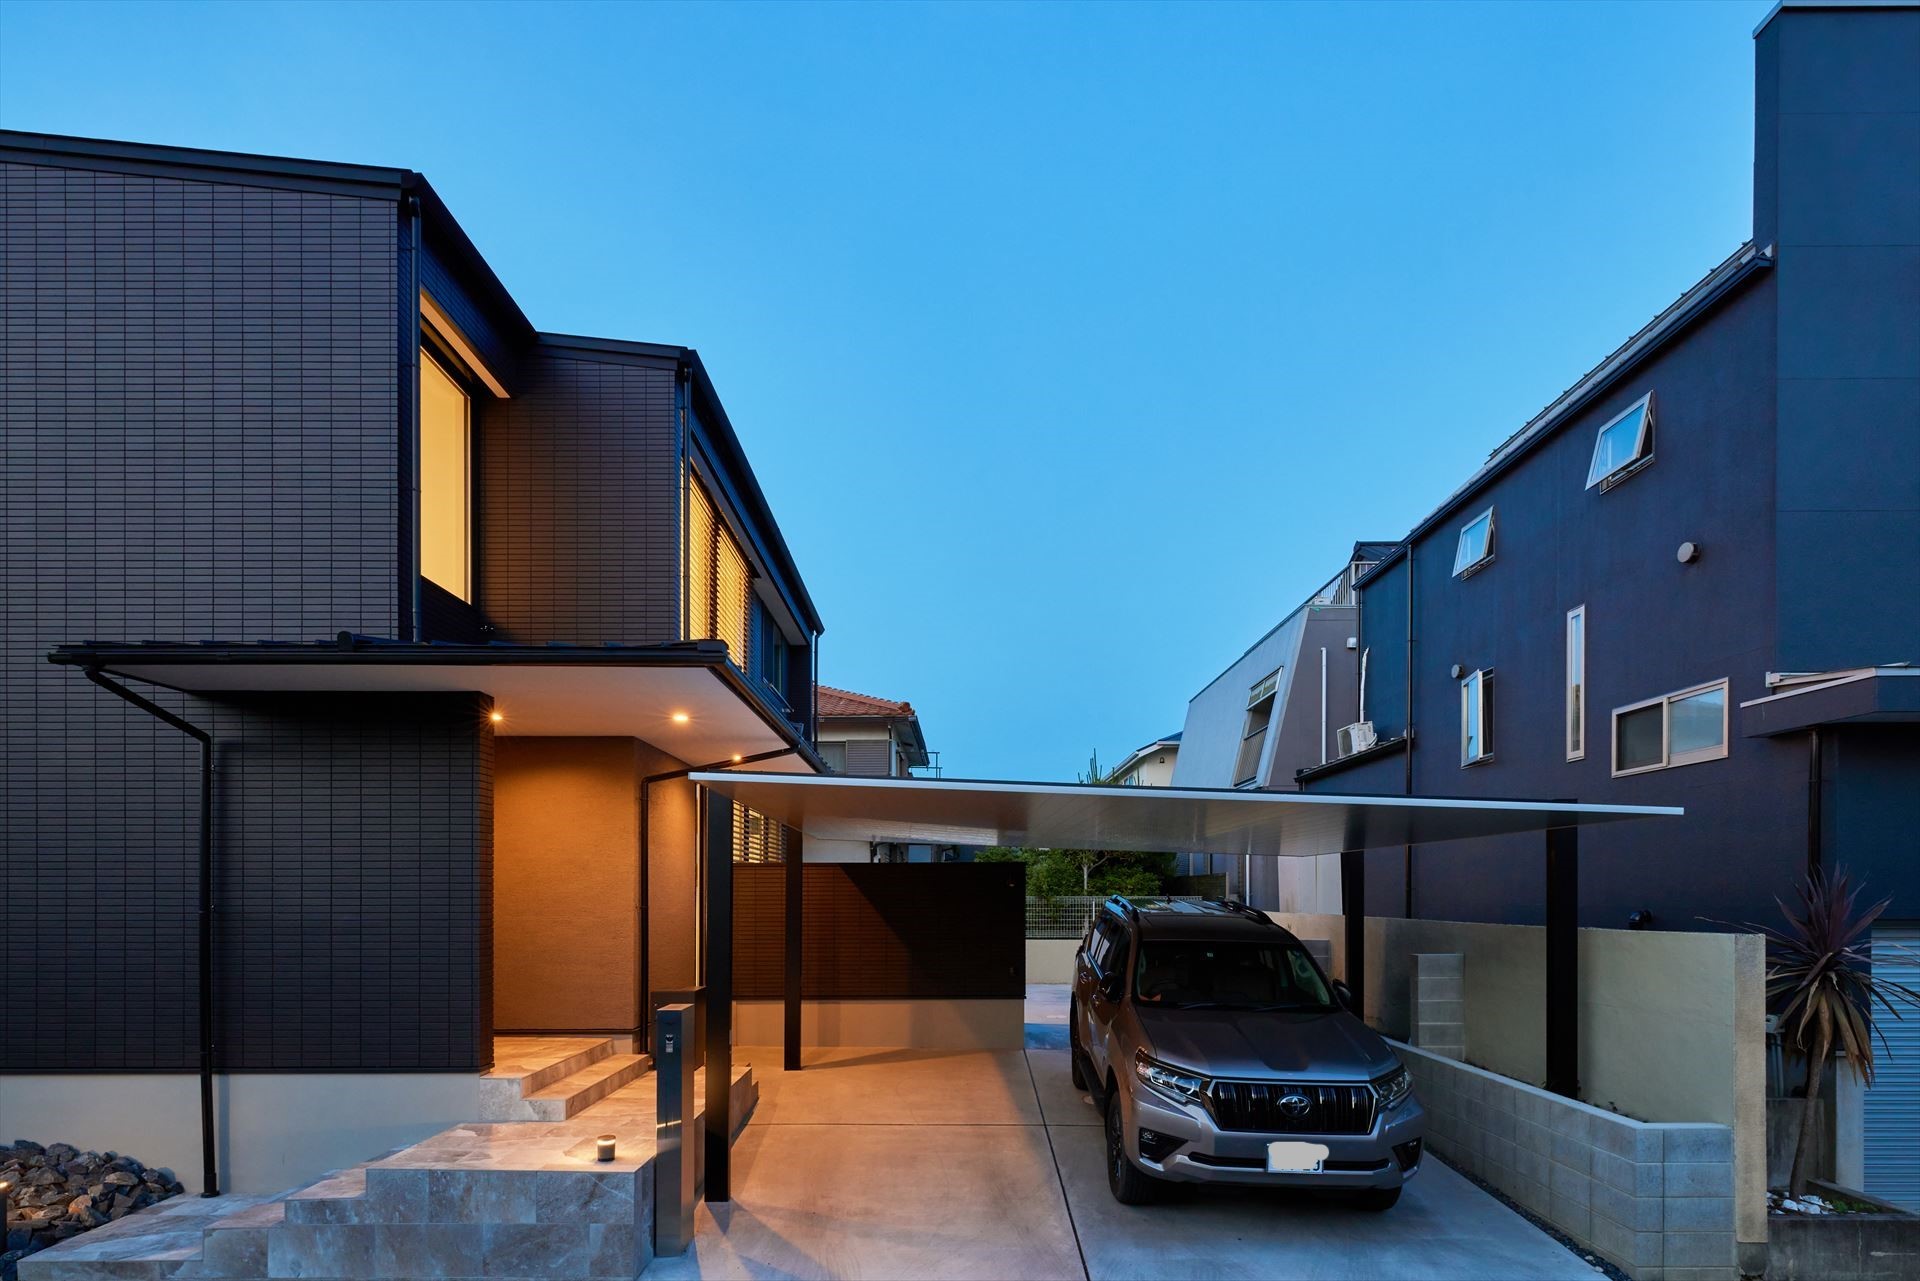 黒いハコとシャープな屋根の重なりが美しい外観デザイン